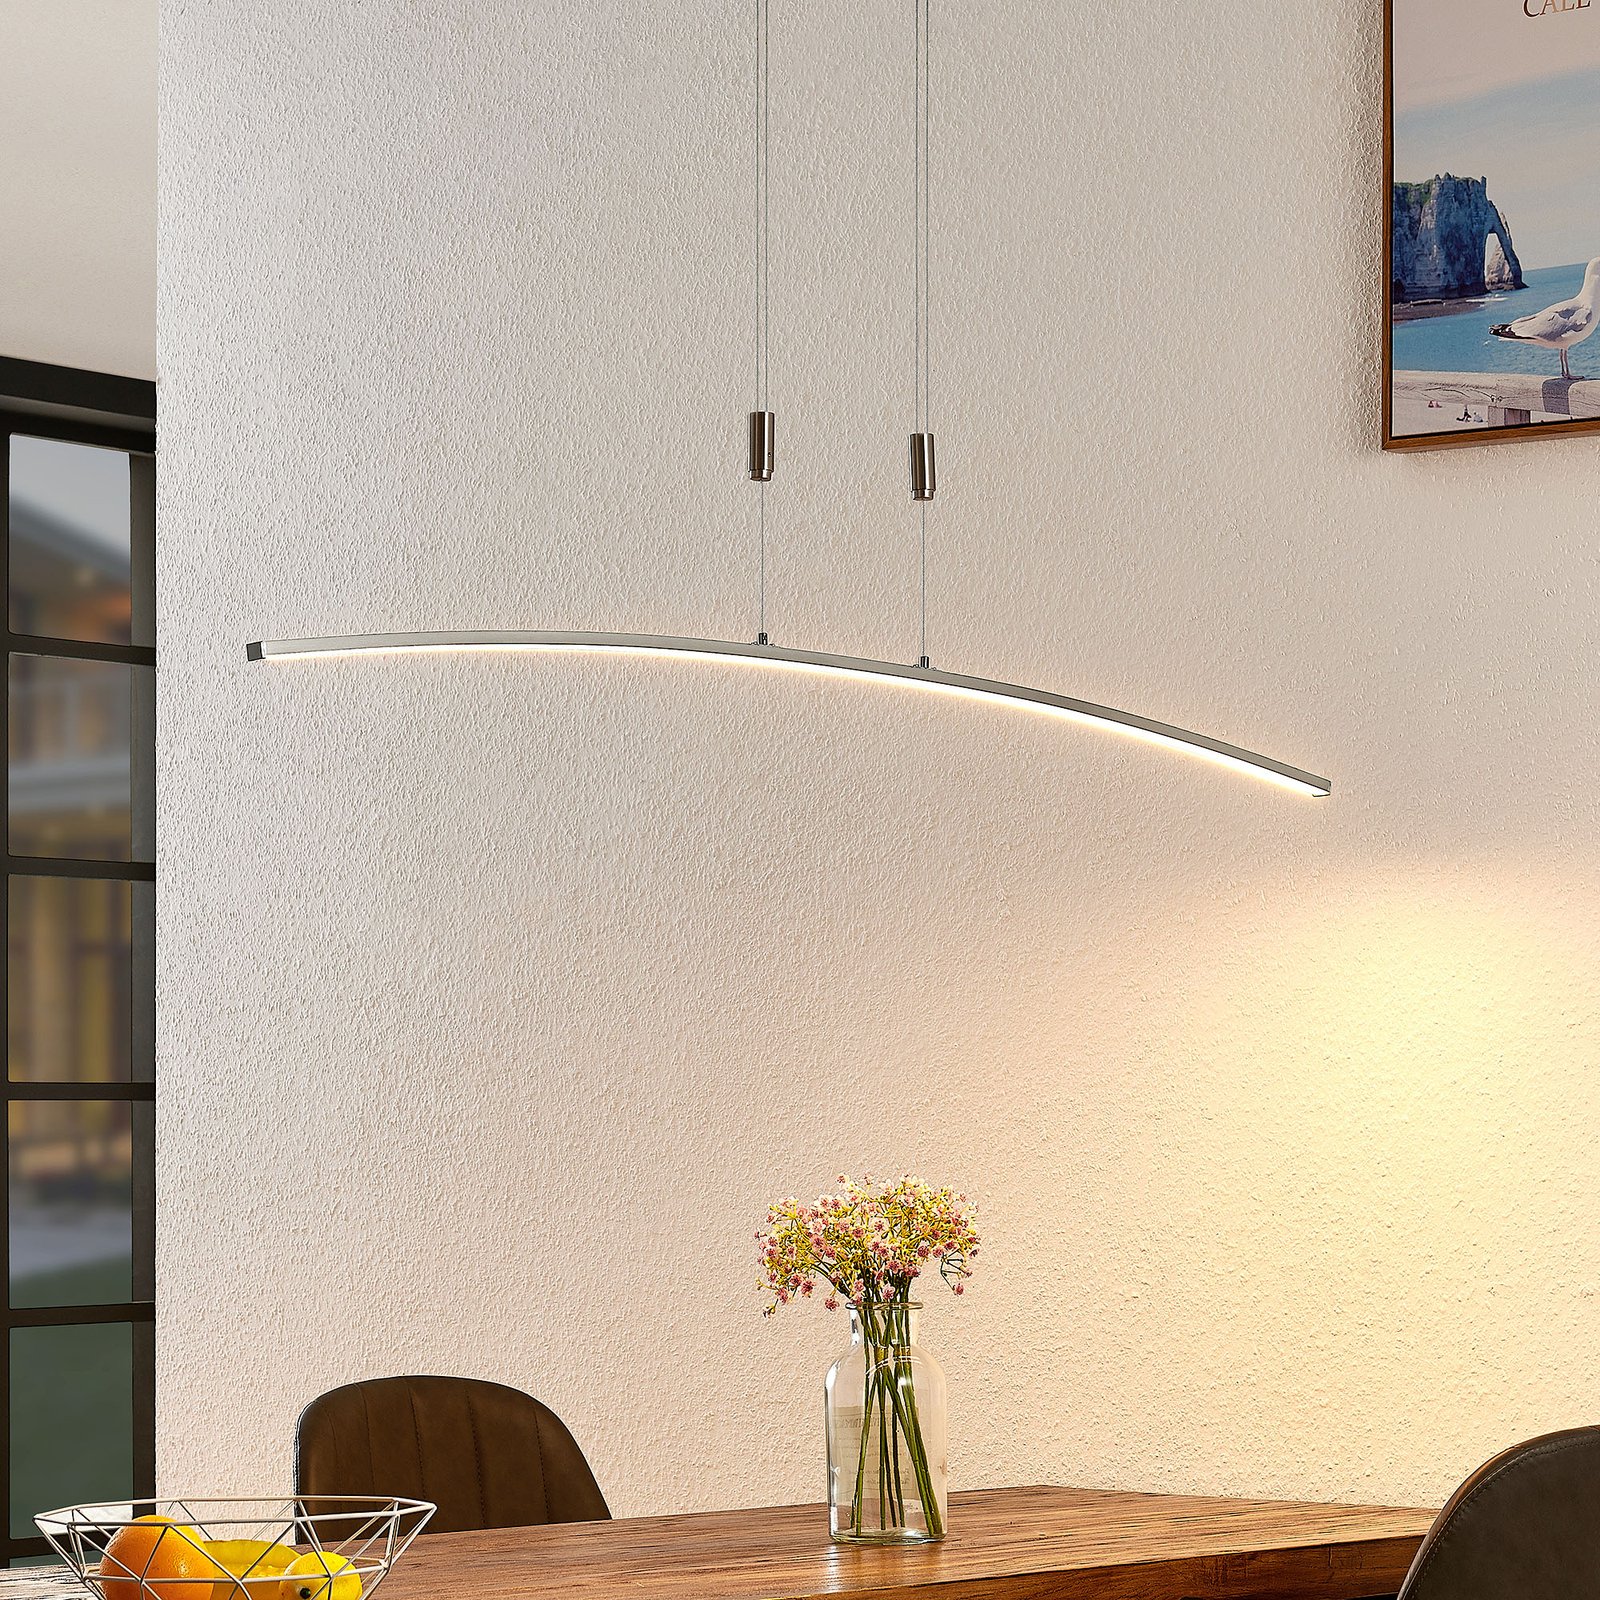 Lindby Phillie lámpara colgante LED alto ajustable